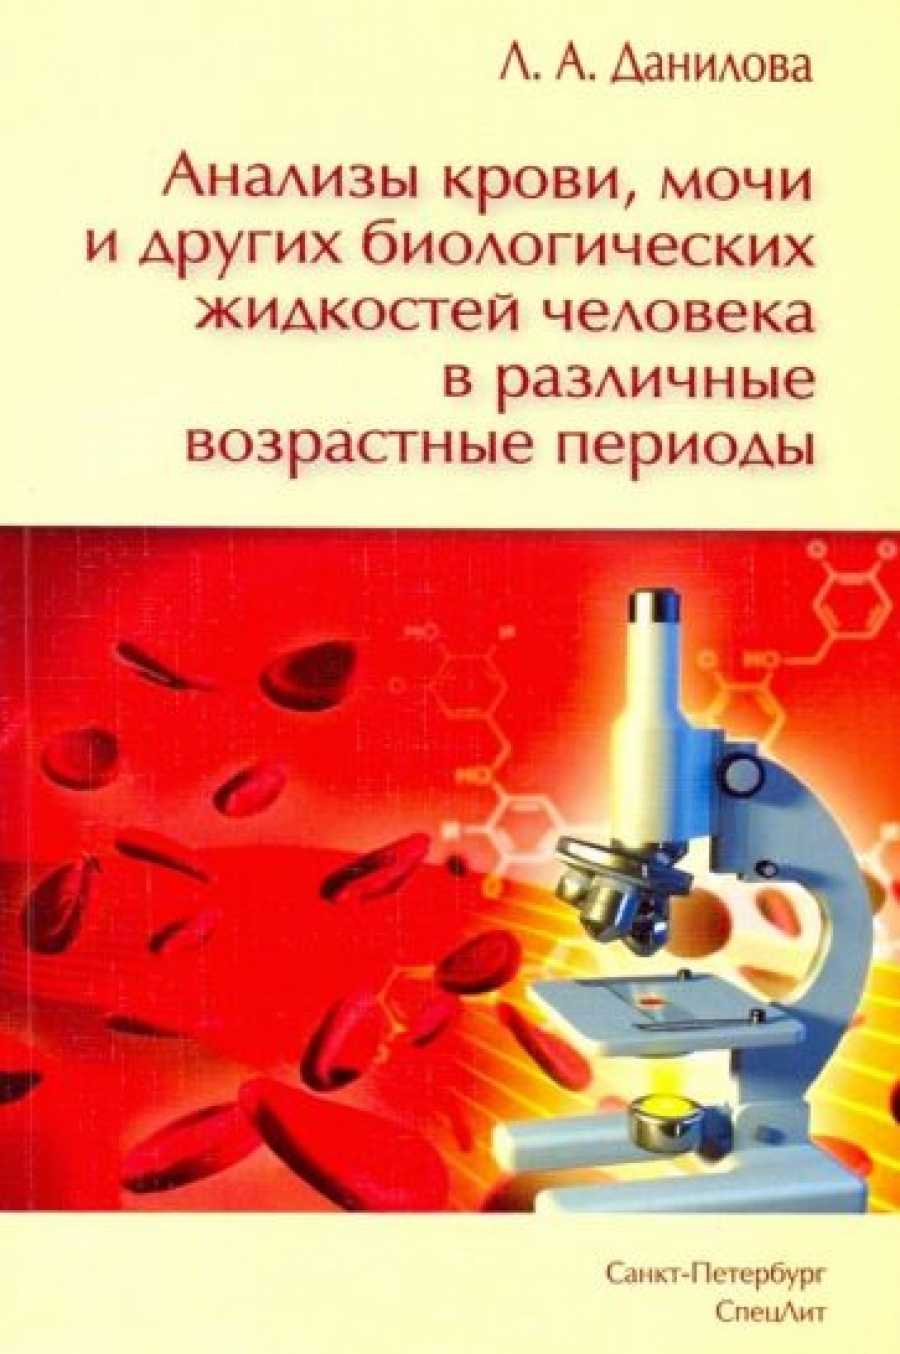 Данилова Л.А. Анализы крови, мочи и других биологических жидкостей человека в различные возрастные периоды 